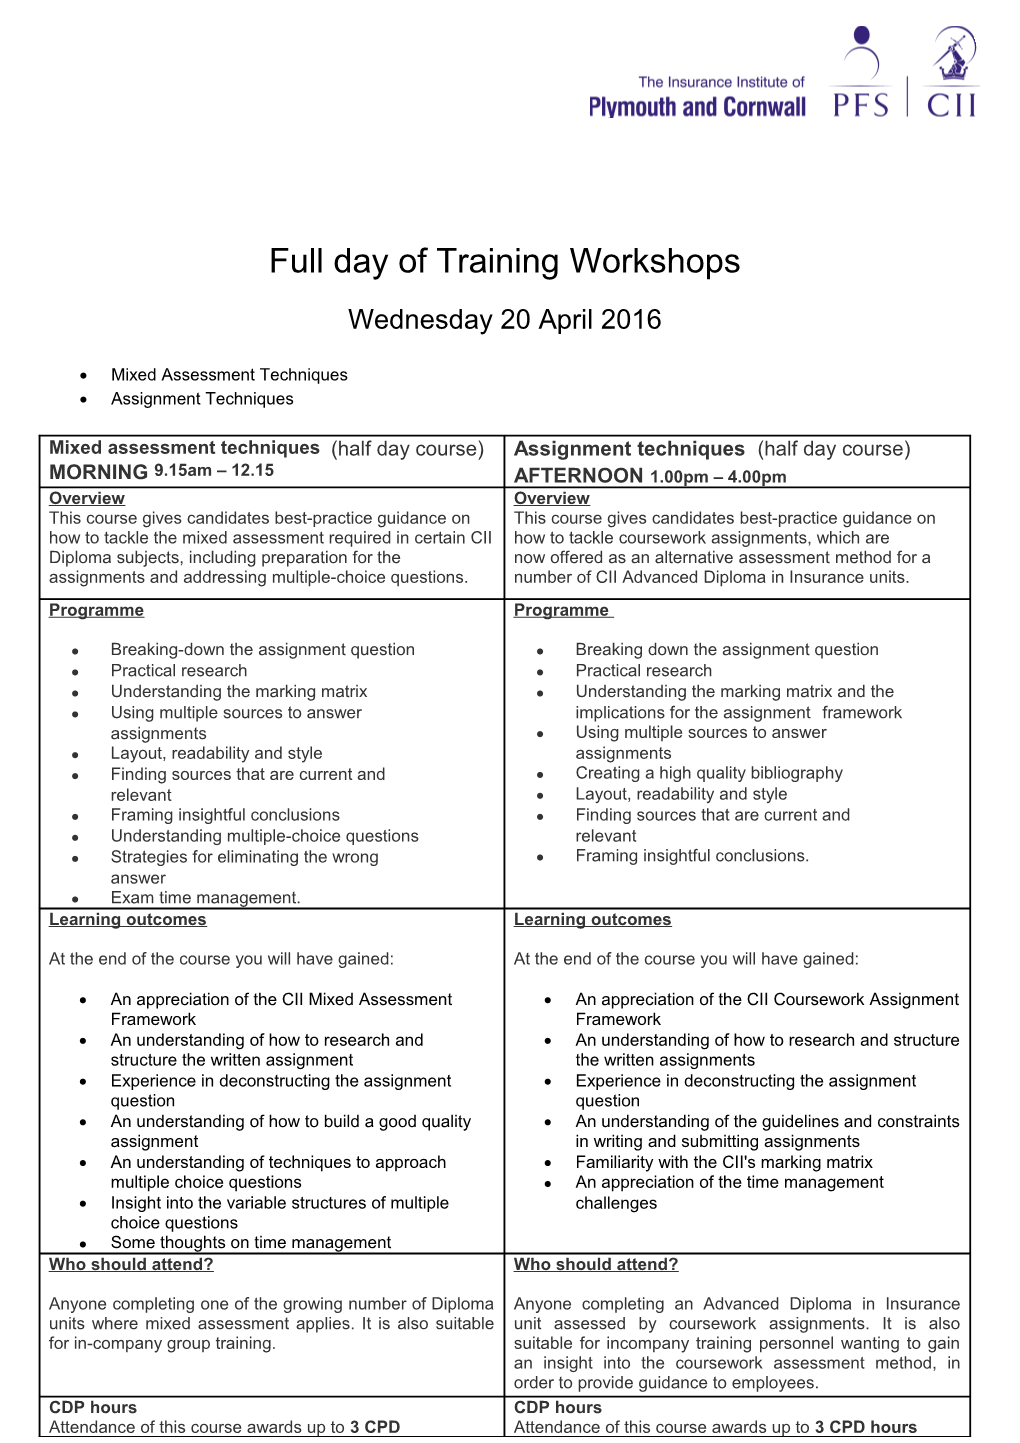 Full Day of Training Workshops